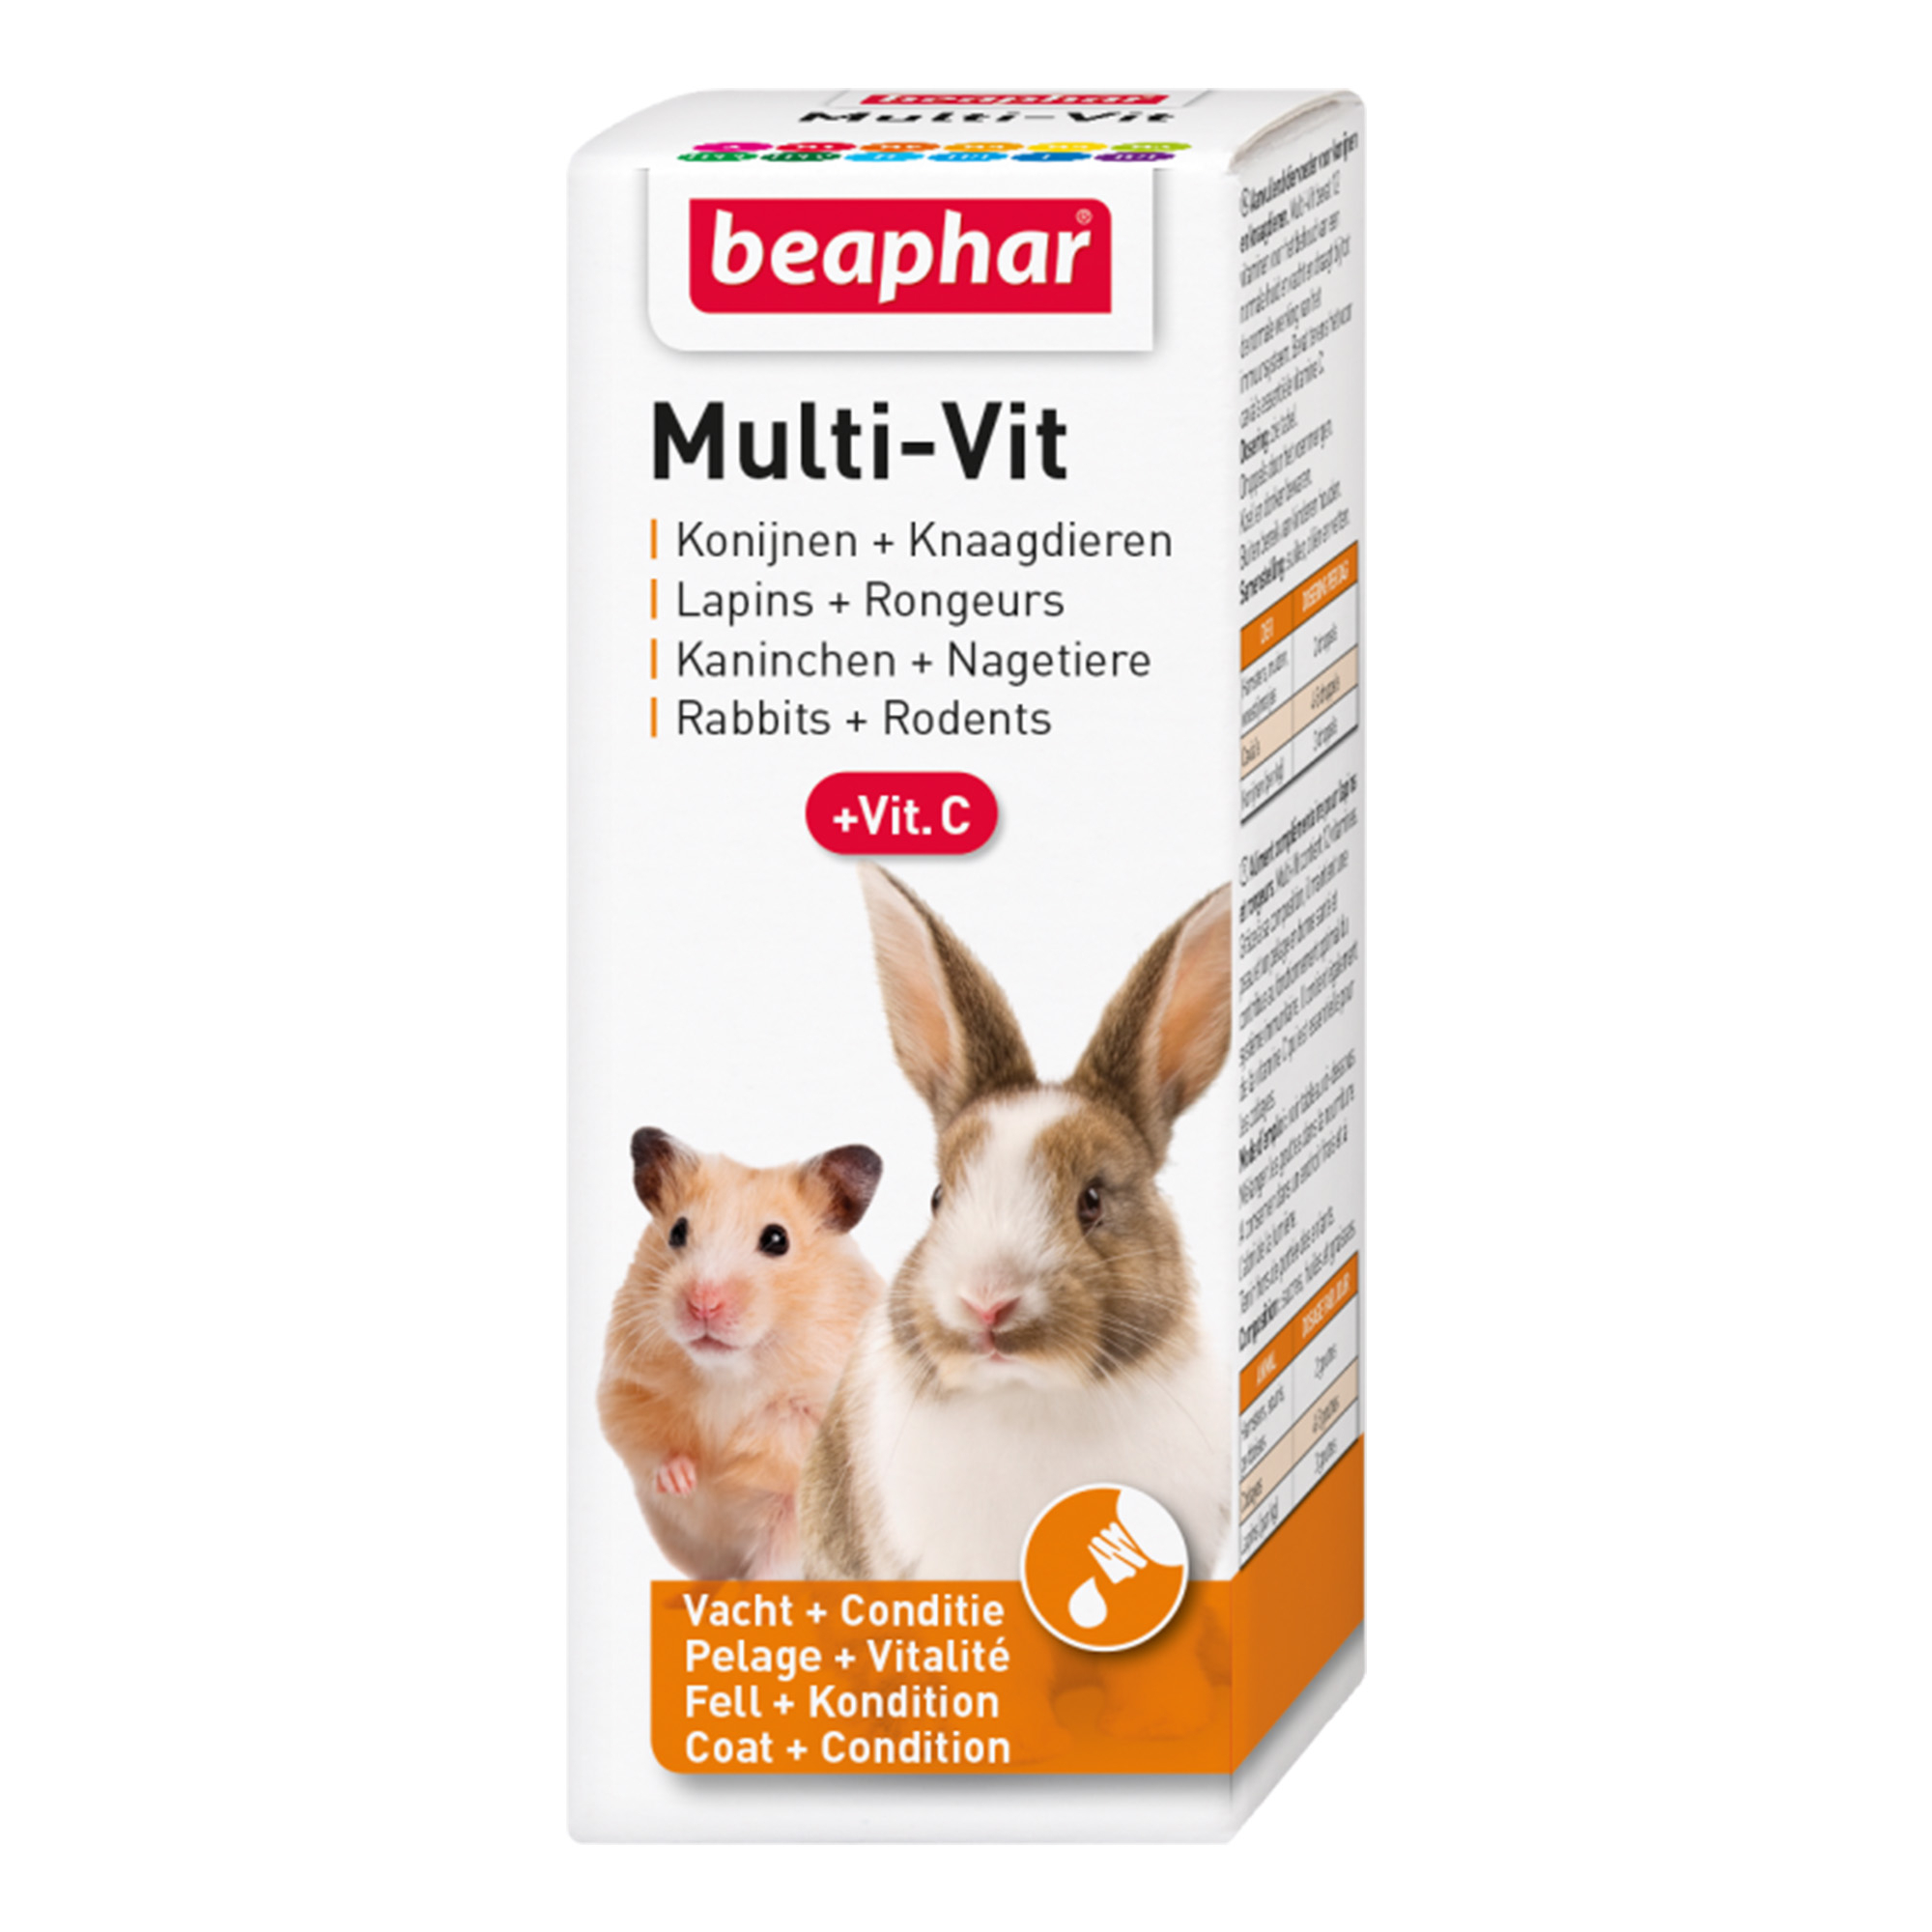 Multi-Vit, vitaminas para roedores